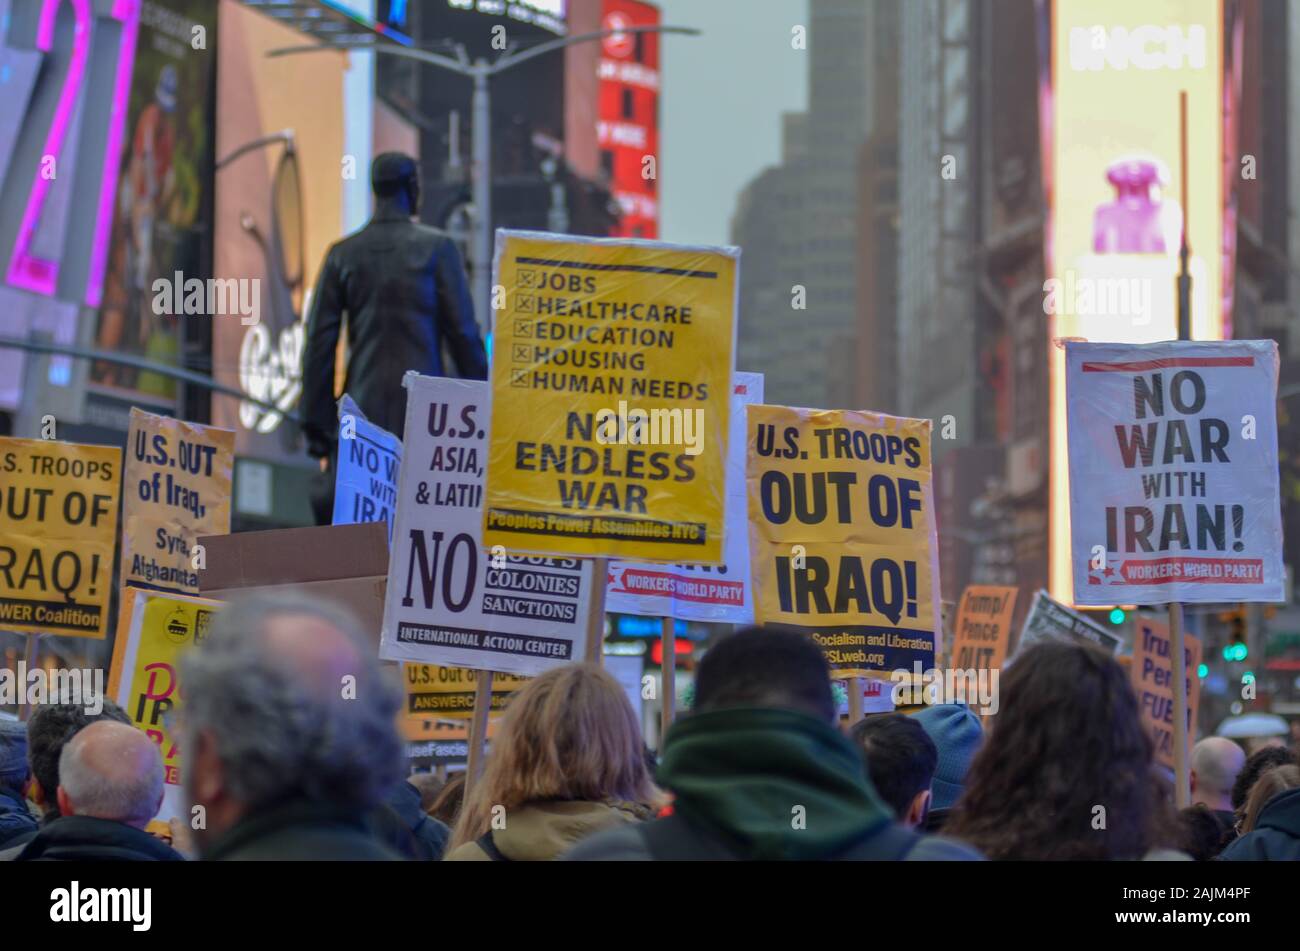 New York, NY - 04 janvier, 2020 : Des centaines de personnes se sont réunis à Times Square à New York pour protester contre la guerre contre l'Iran et l'Iraq le 4 janvier 2020. Banque D'Images